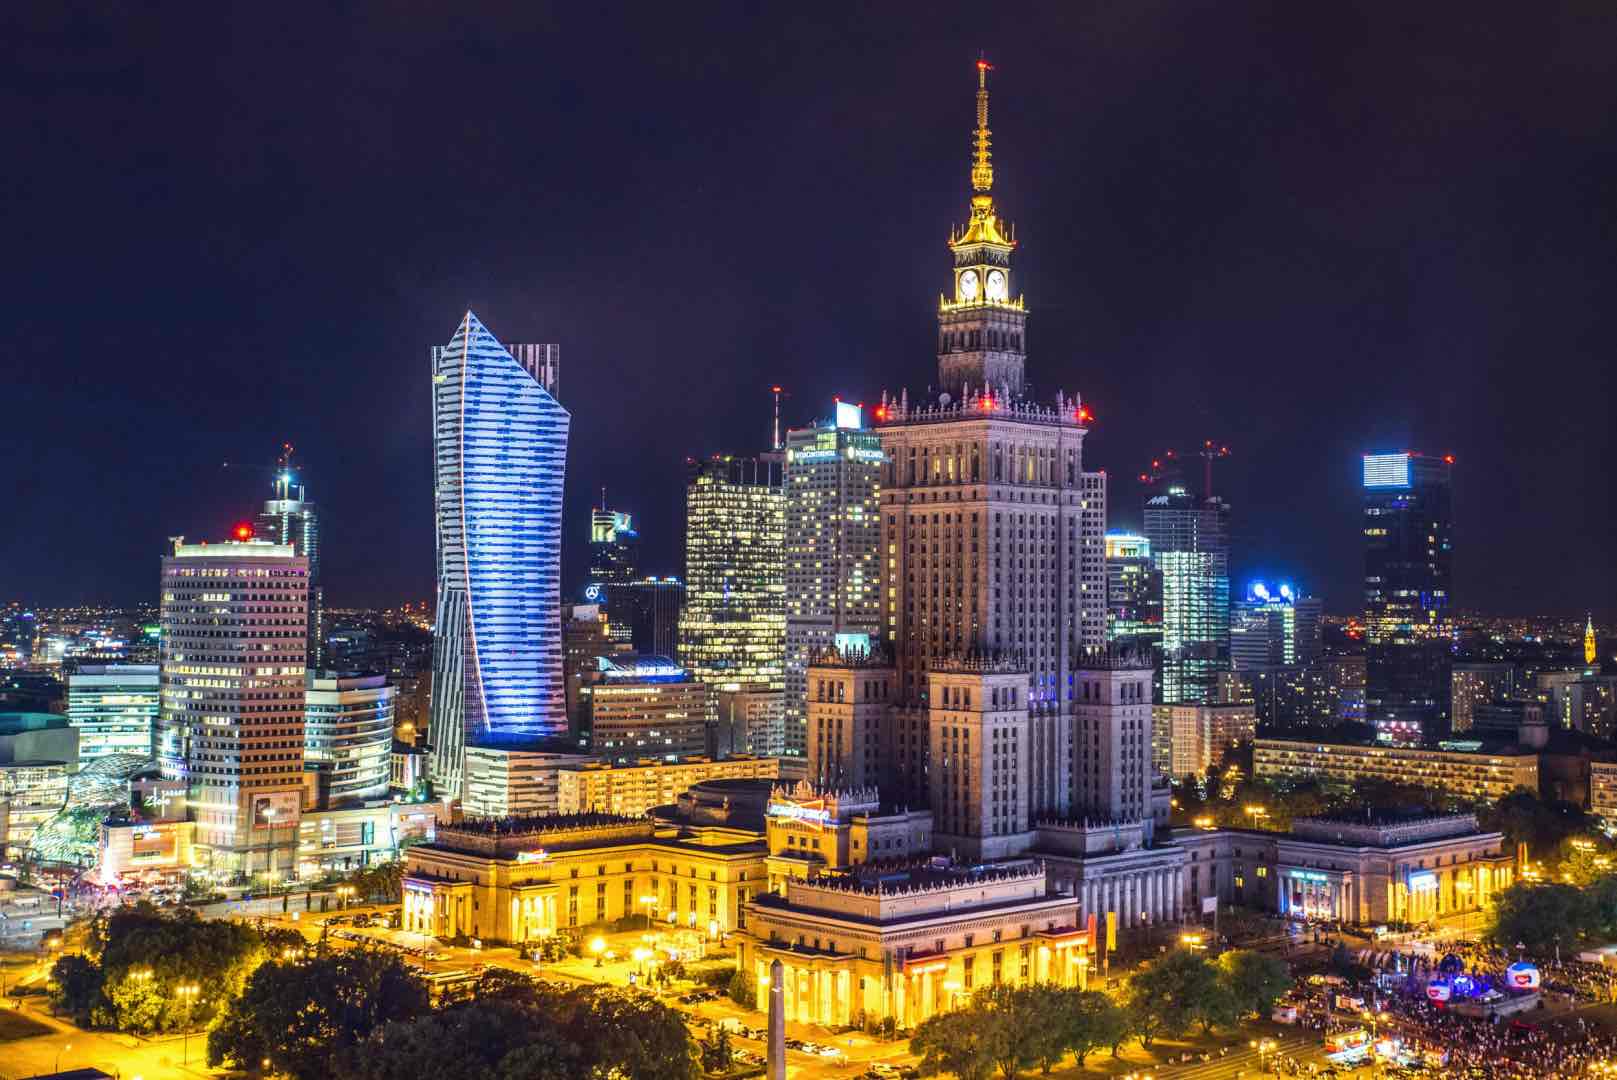 Warsaw at night -